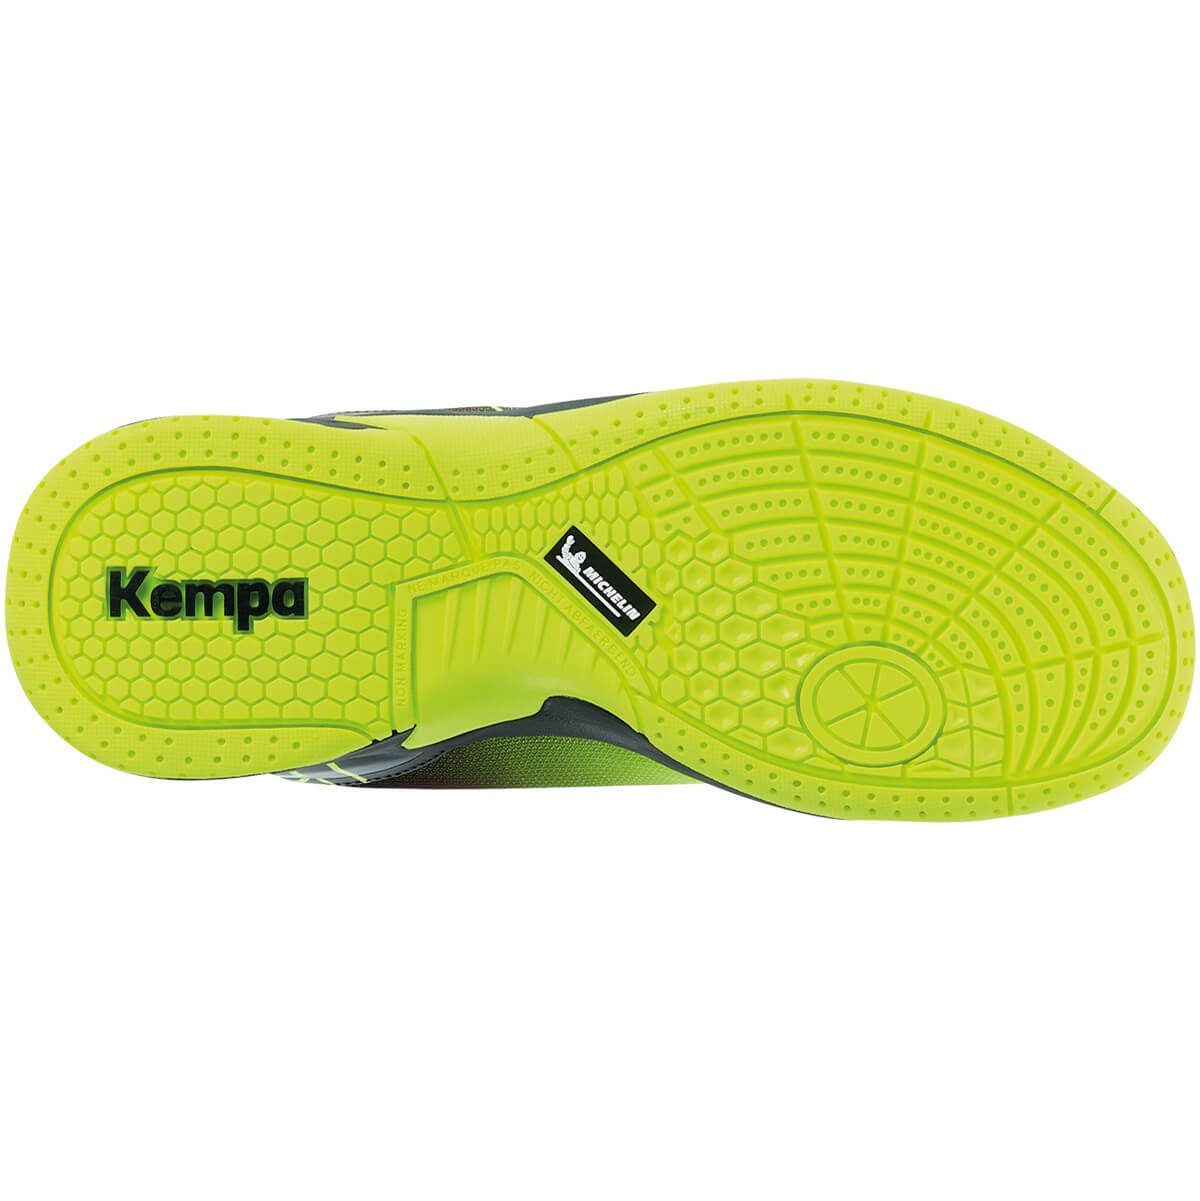 Kempa Kempa fluo Hallen-Sport-Schuhe gelb/schwarz Hallenschuh